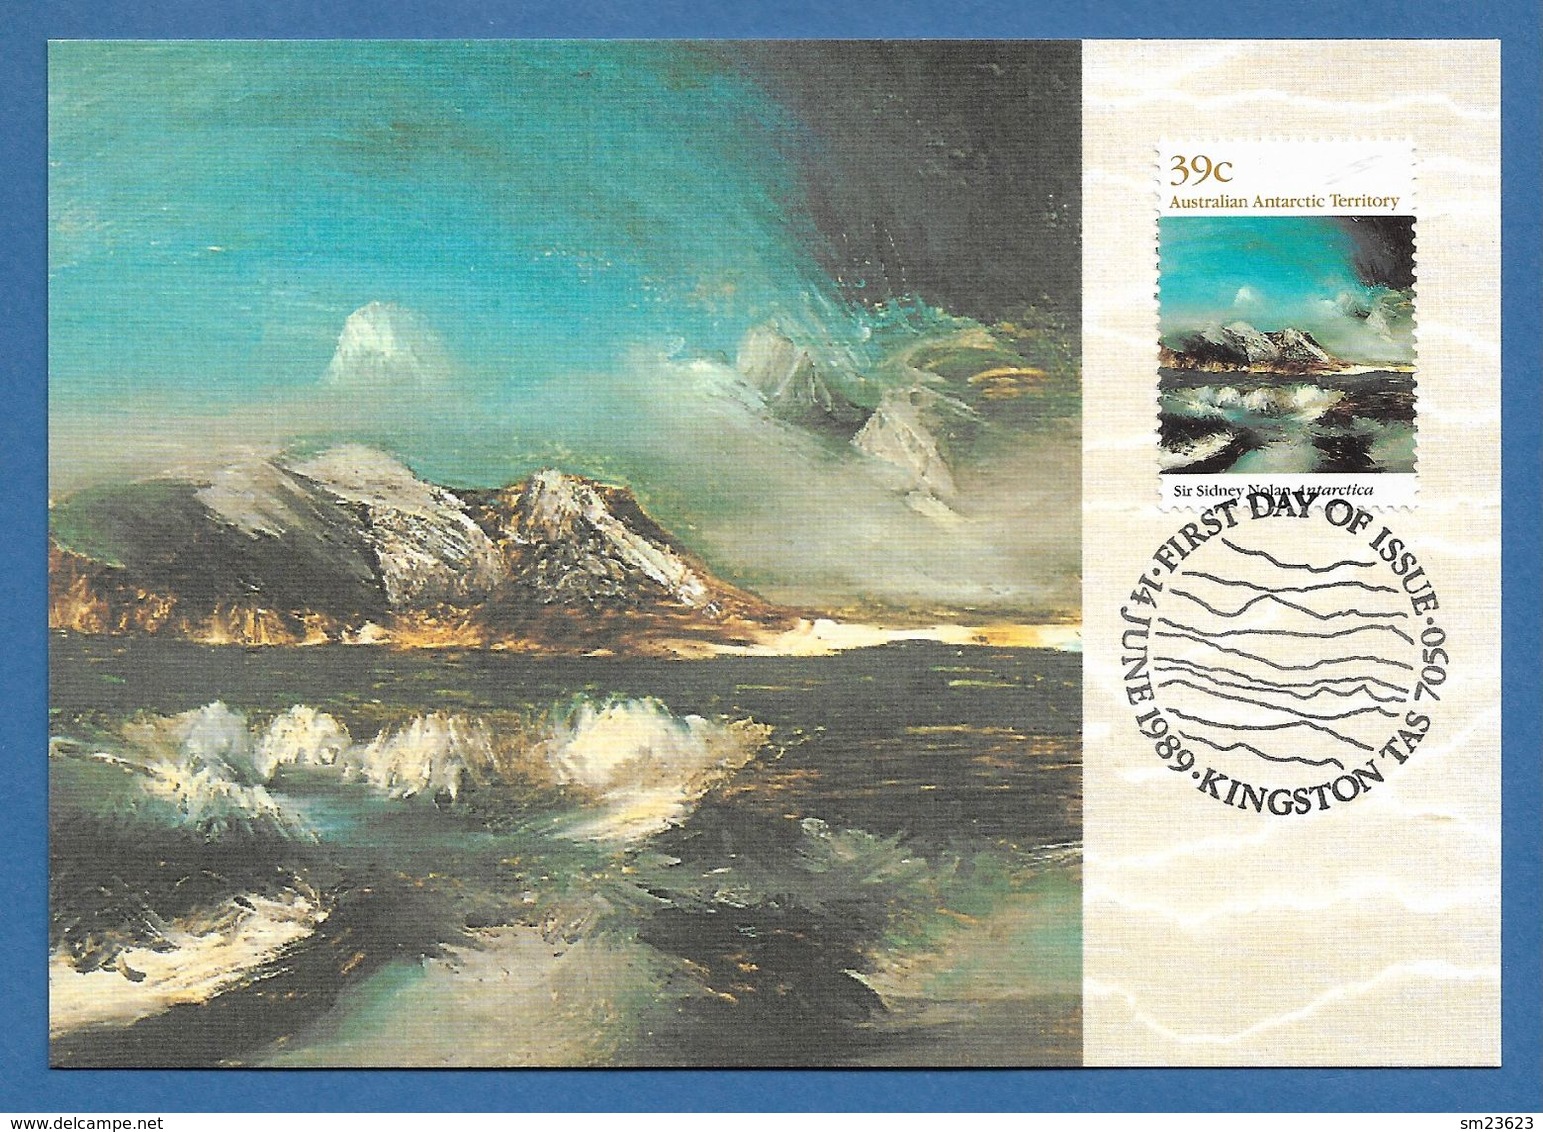 AAT  1989  Mi.Nr. 84 , Antarctica - Antarctic Landscape - Maximum Card - First Day Of Issue 14. June 1989 - Maximumkarten